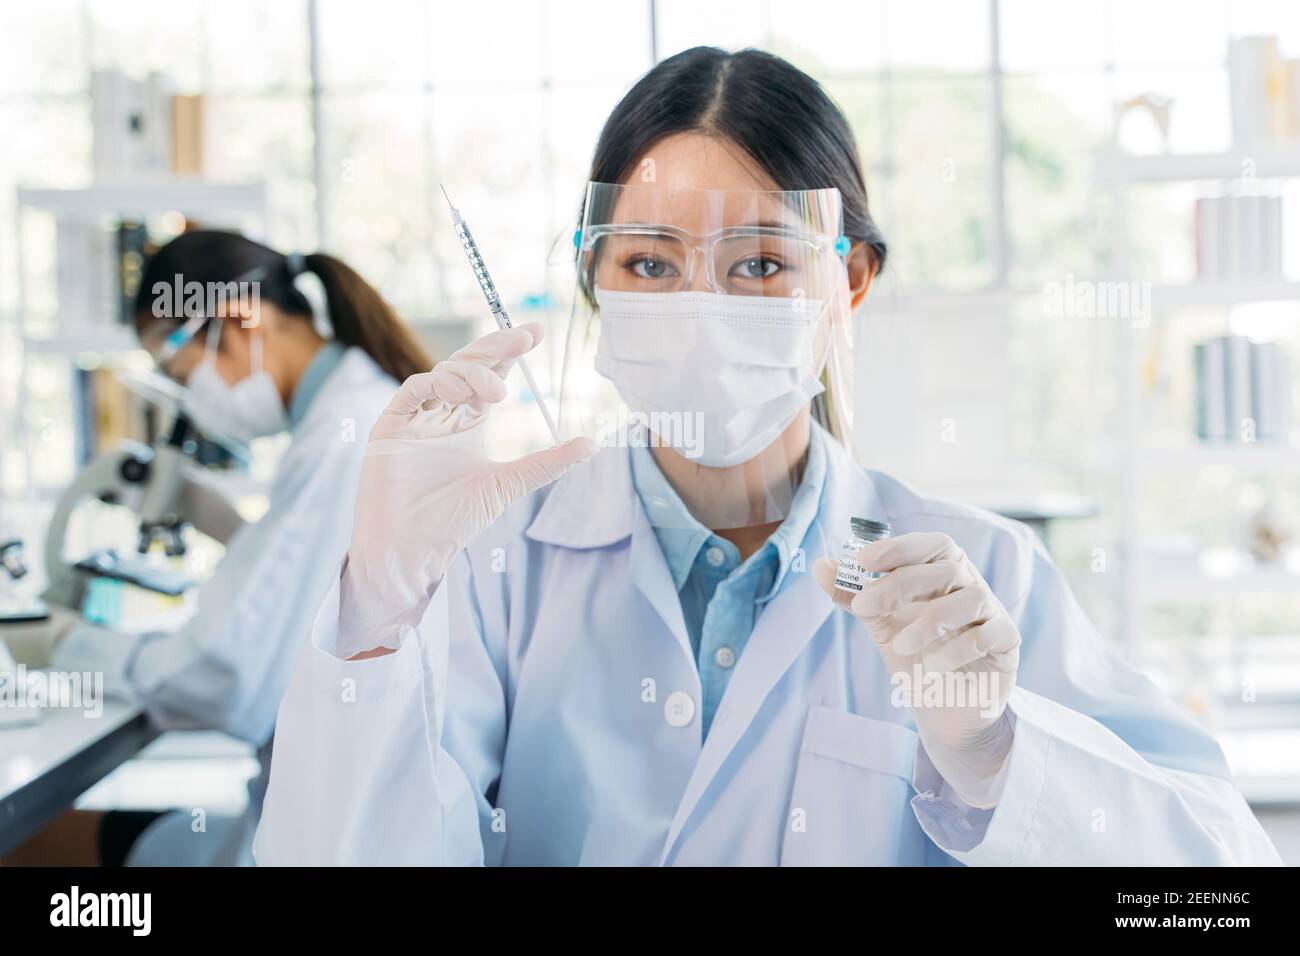 Erfolgreiche junge medizinische Forscherin und Wissenschaftlerin im Labcoat stehend Im Labor während der Arbeit an der Entwicklung von covid-19-Impfstoff Holding Injektion Und Flasche Stockfoto